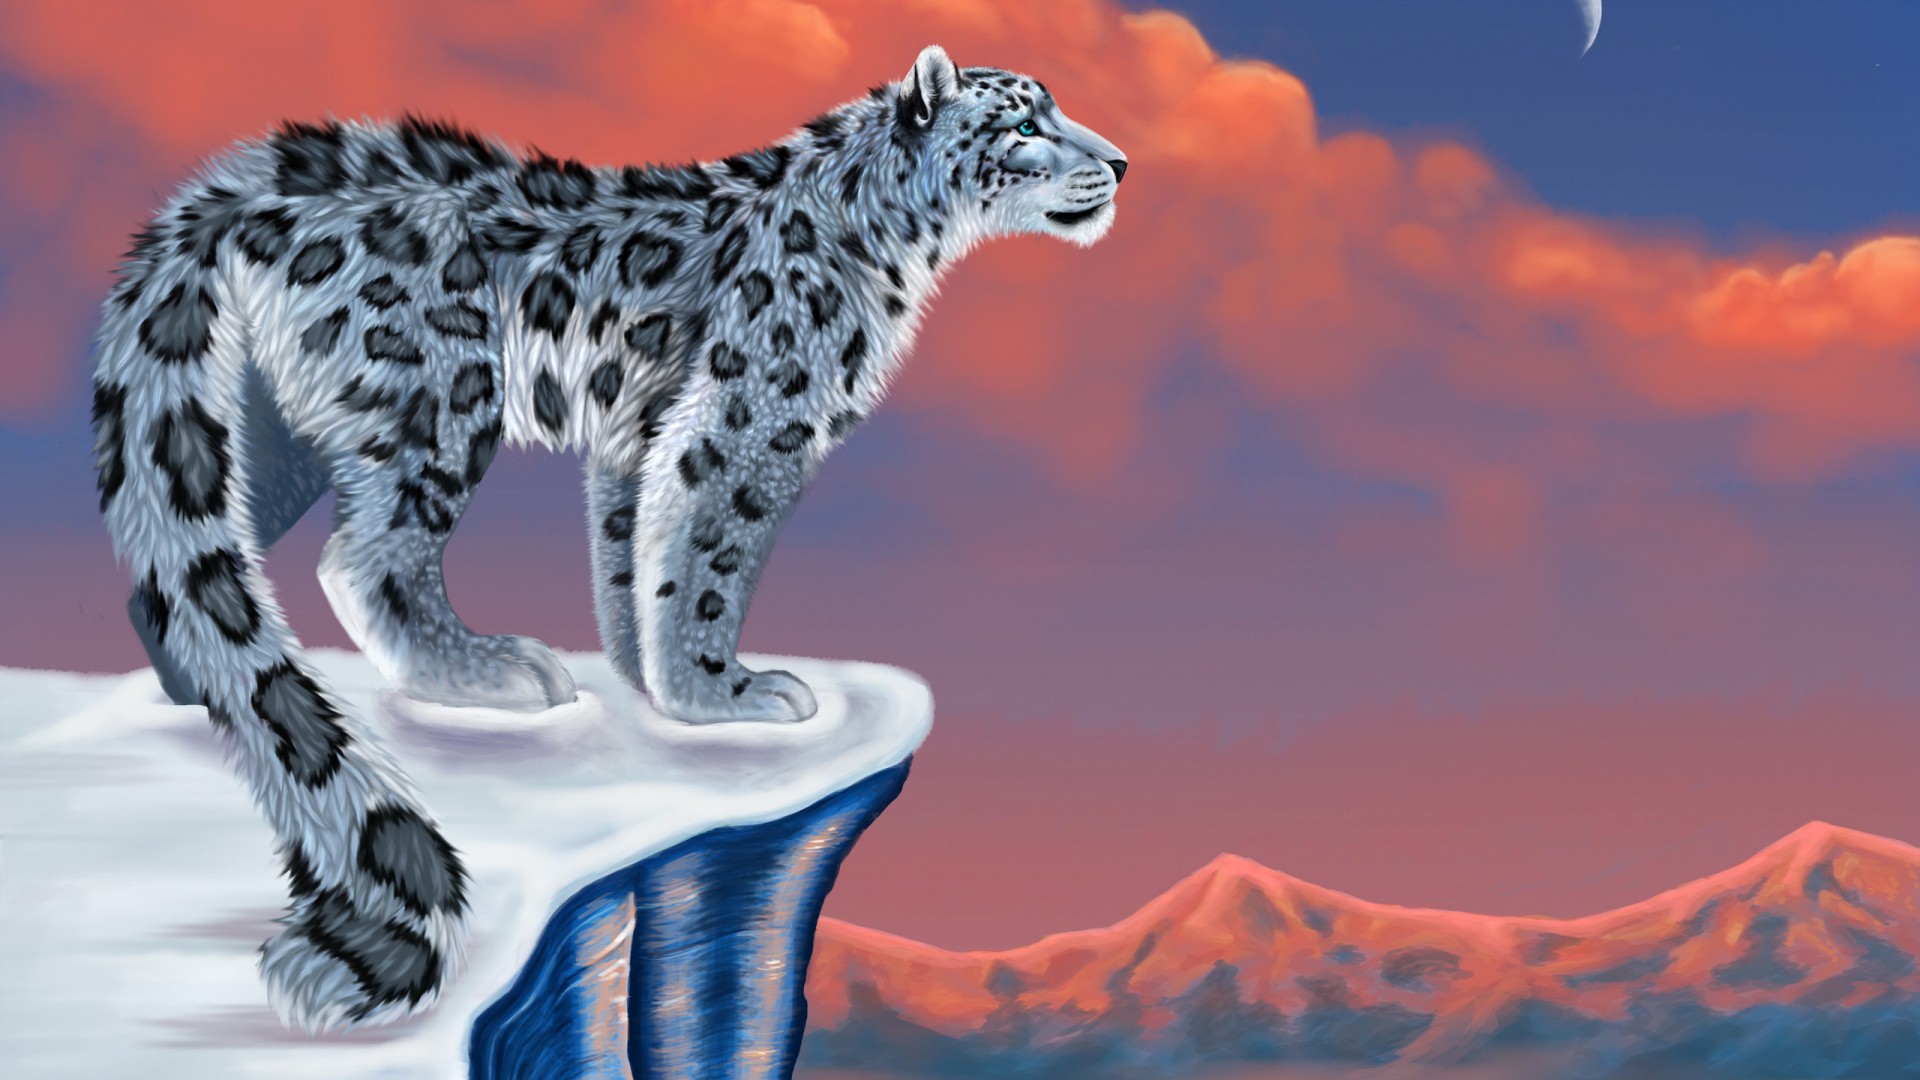 Free download 3D Wallpaper Animal Images Full HD Desktop Free [1920x1080]  for your Desktop, Mobile & Tablet | Explore 66+ Free Wallpapers Animals |  Free Wallpaper Of Animals, Free Animals Wallpapers, Free